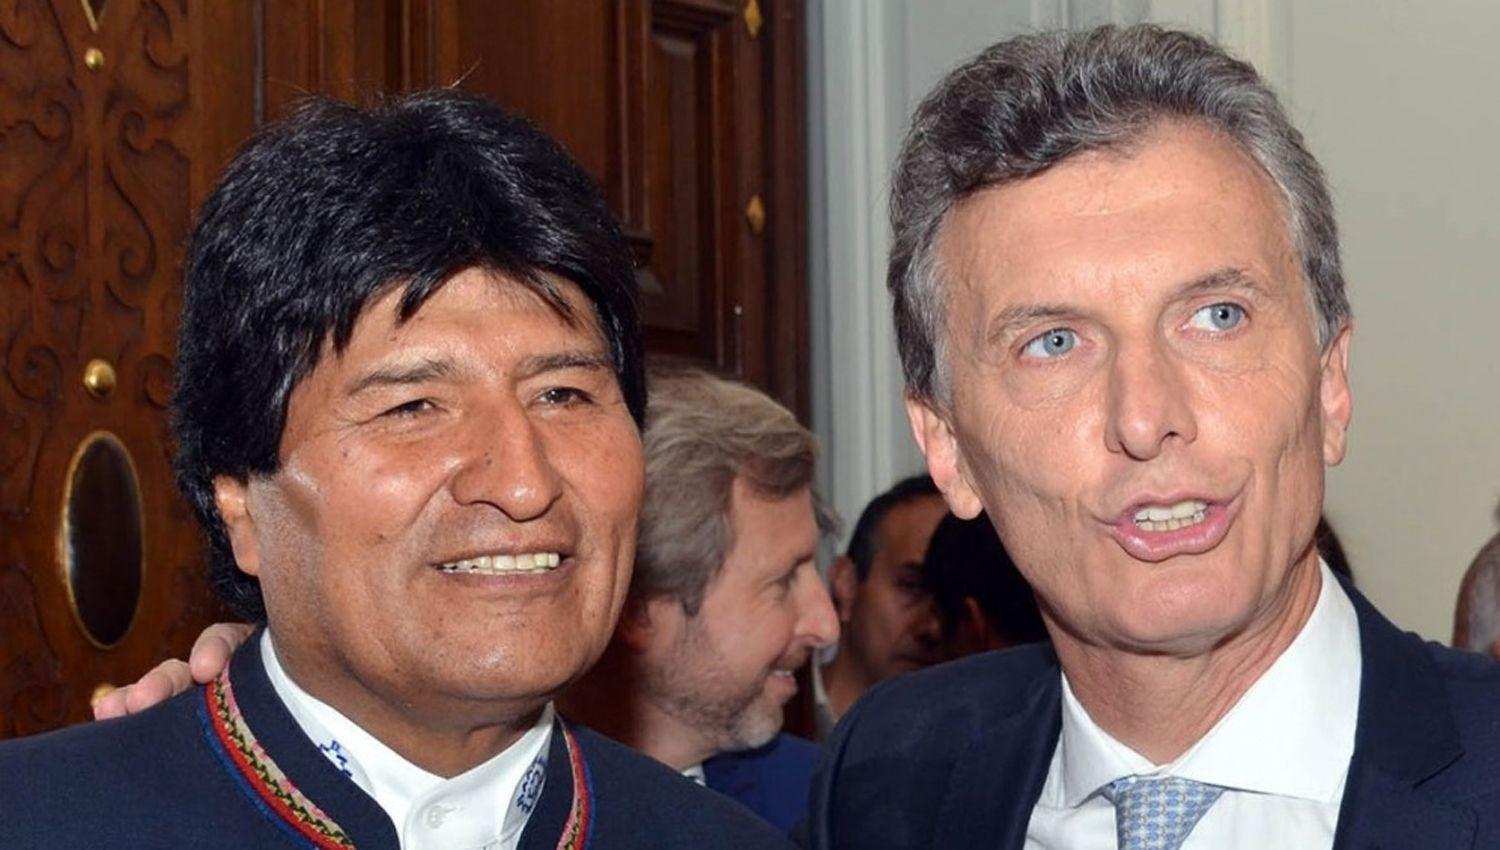 Evo Morales dijo que Macri deberaacute ser juzgado para que ldquonunca maacutes haya golpes de Estadordquo